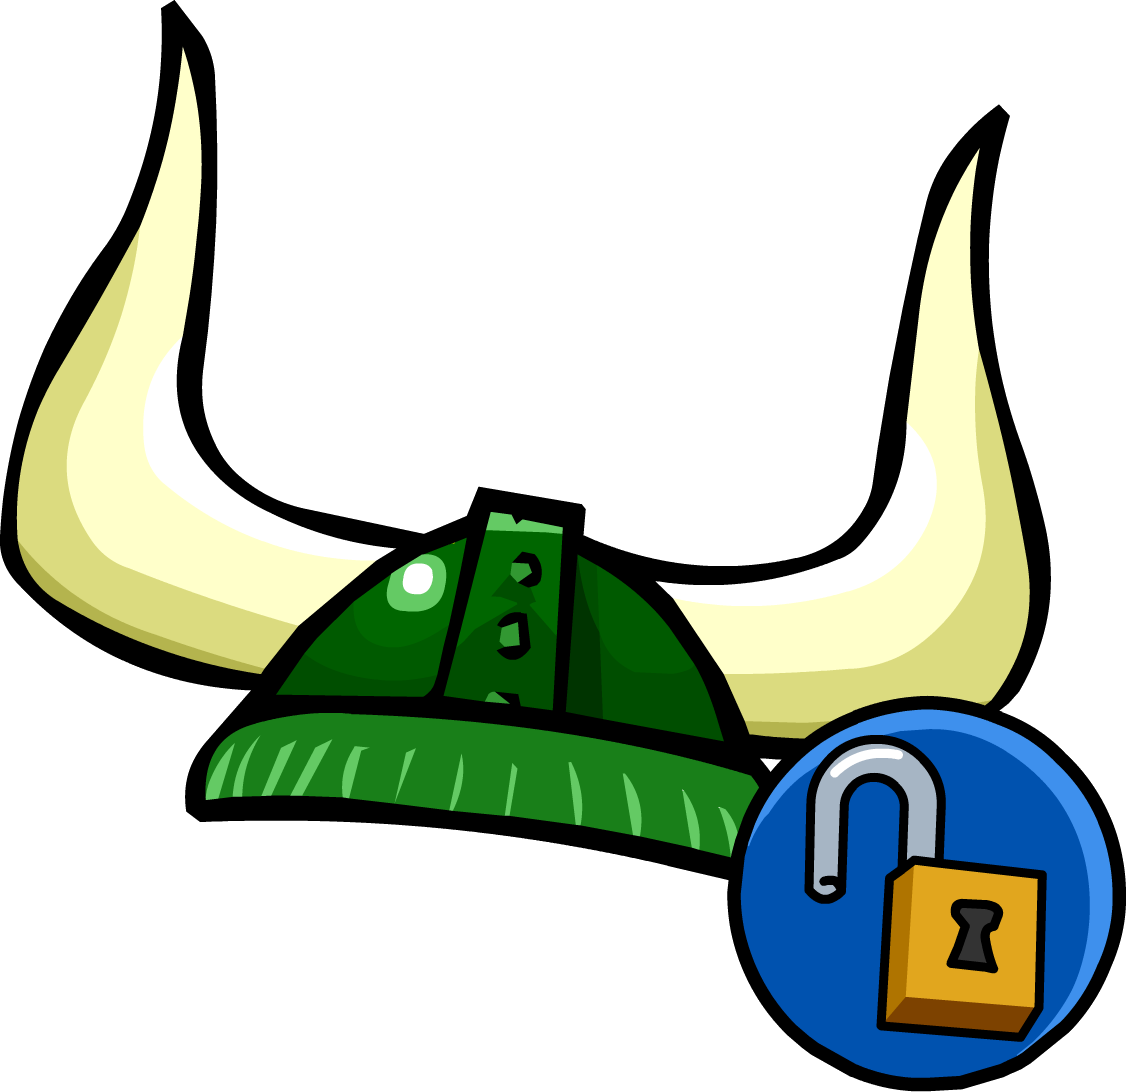 Green Viking Helmet | Club Penguin Wiki | Fandom powered by Wikia